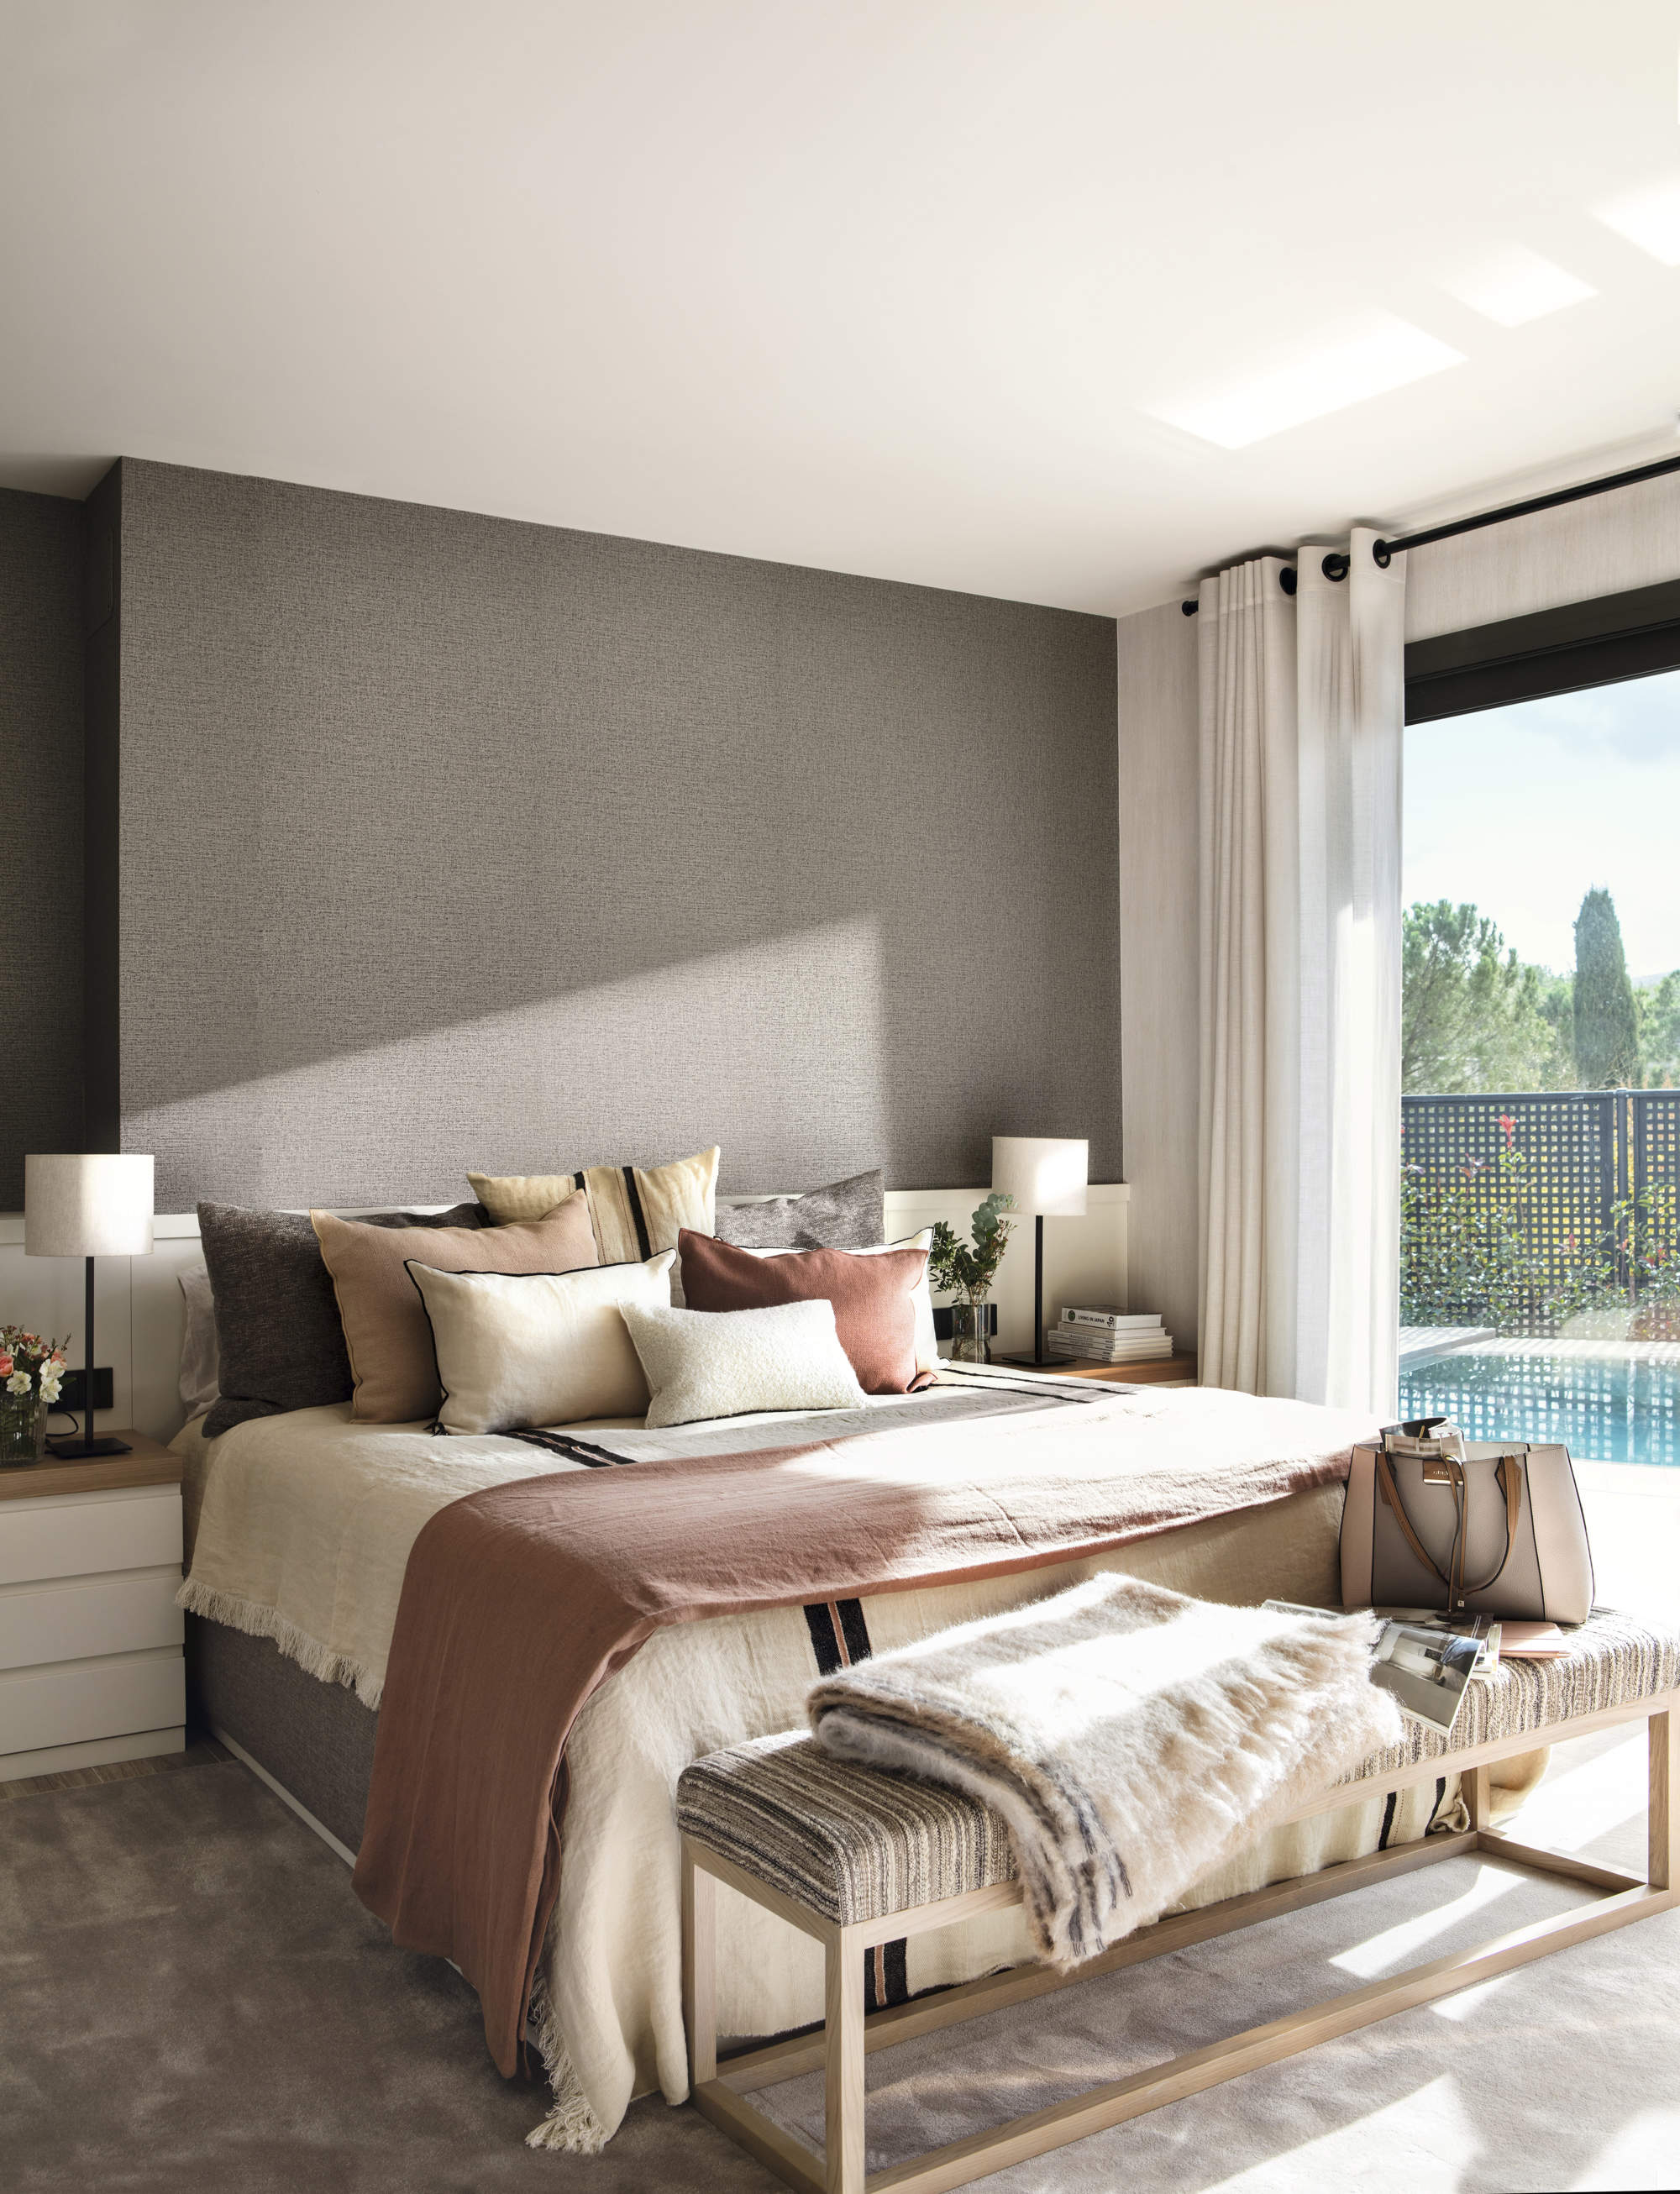 Dormitorio con pared principal en gris, y decoración en tonos neutros y cálidos.